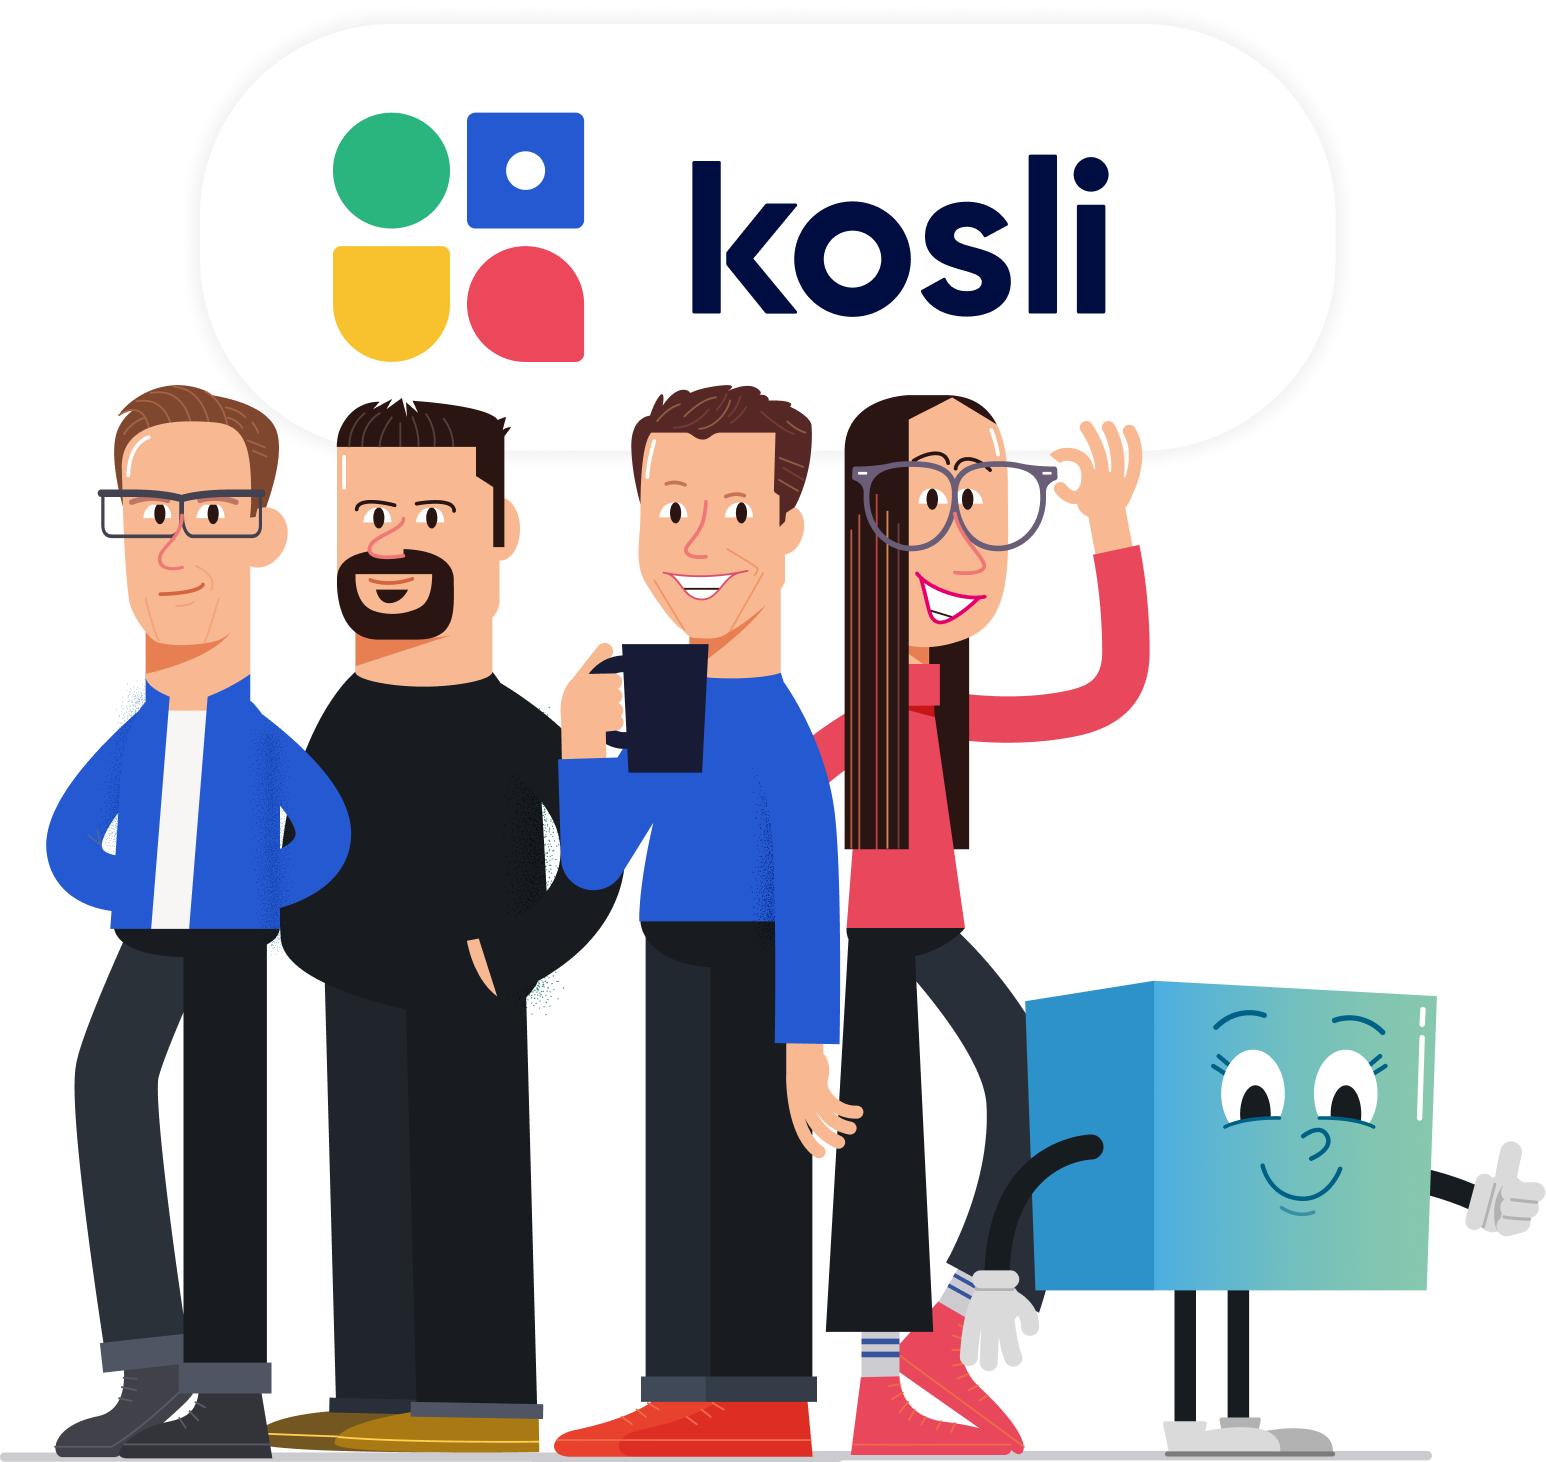 kosli team members with arti and the Kosli logo